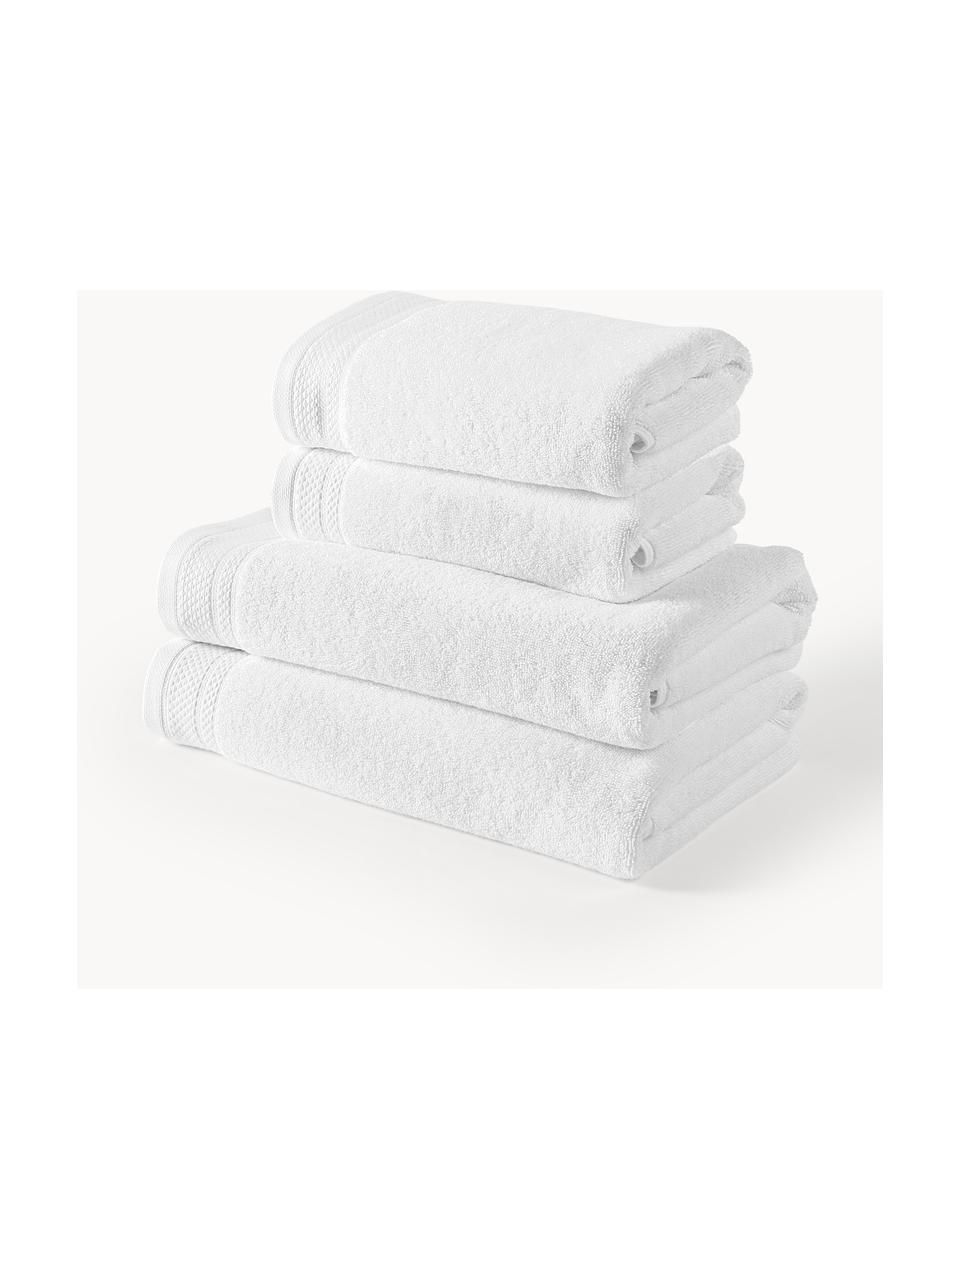 Handtuch-Set Premium aus Bio-Baumwolle, in verschiedenen Setgrössen, 100 % Bio-Baumwolle, GOTS-zertifiziert (von GCL International, GCL-300517)
Schwere Qualität, 600 g/m², Weiss, 4er-Set (Handtuch & Duschtuch)